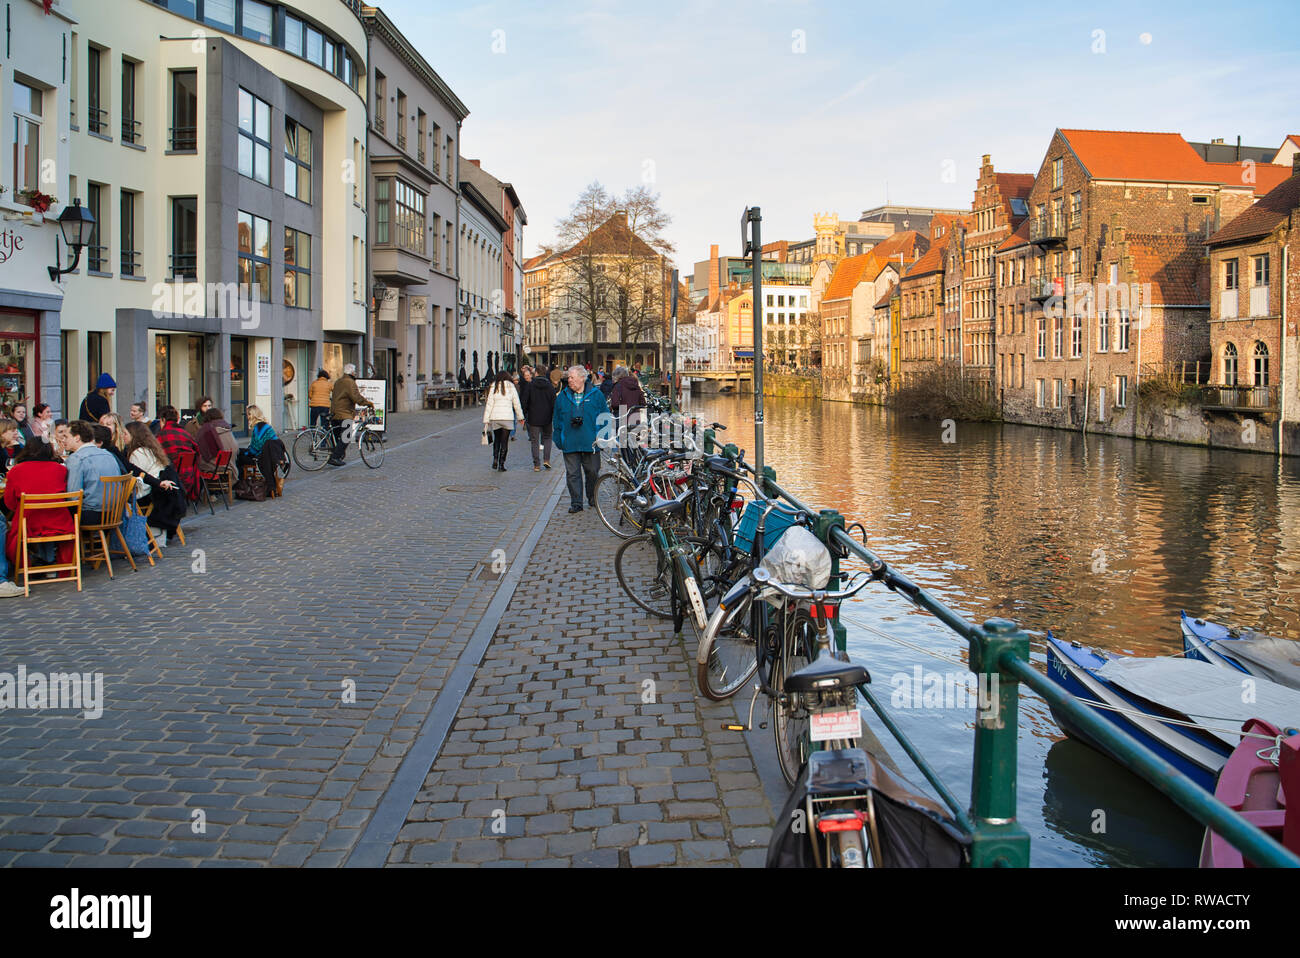 GENT, Belgio - 17 febbraio 2019: city quay con edifici storici. Biciclette da recinzione Foto Stock